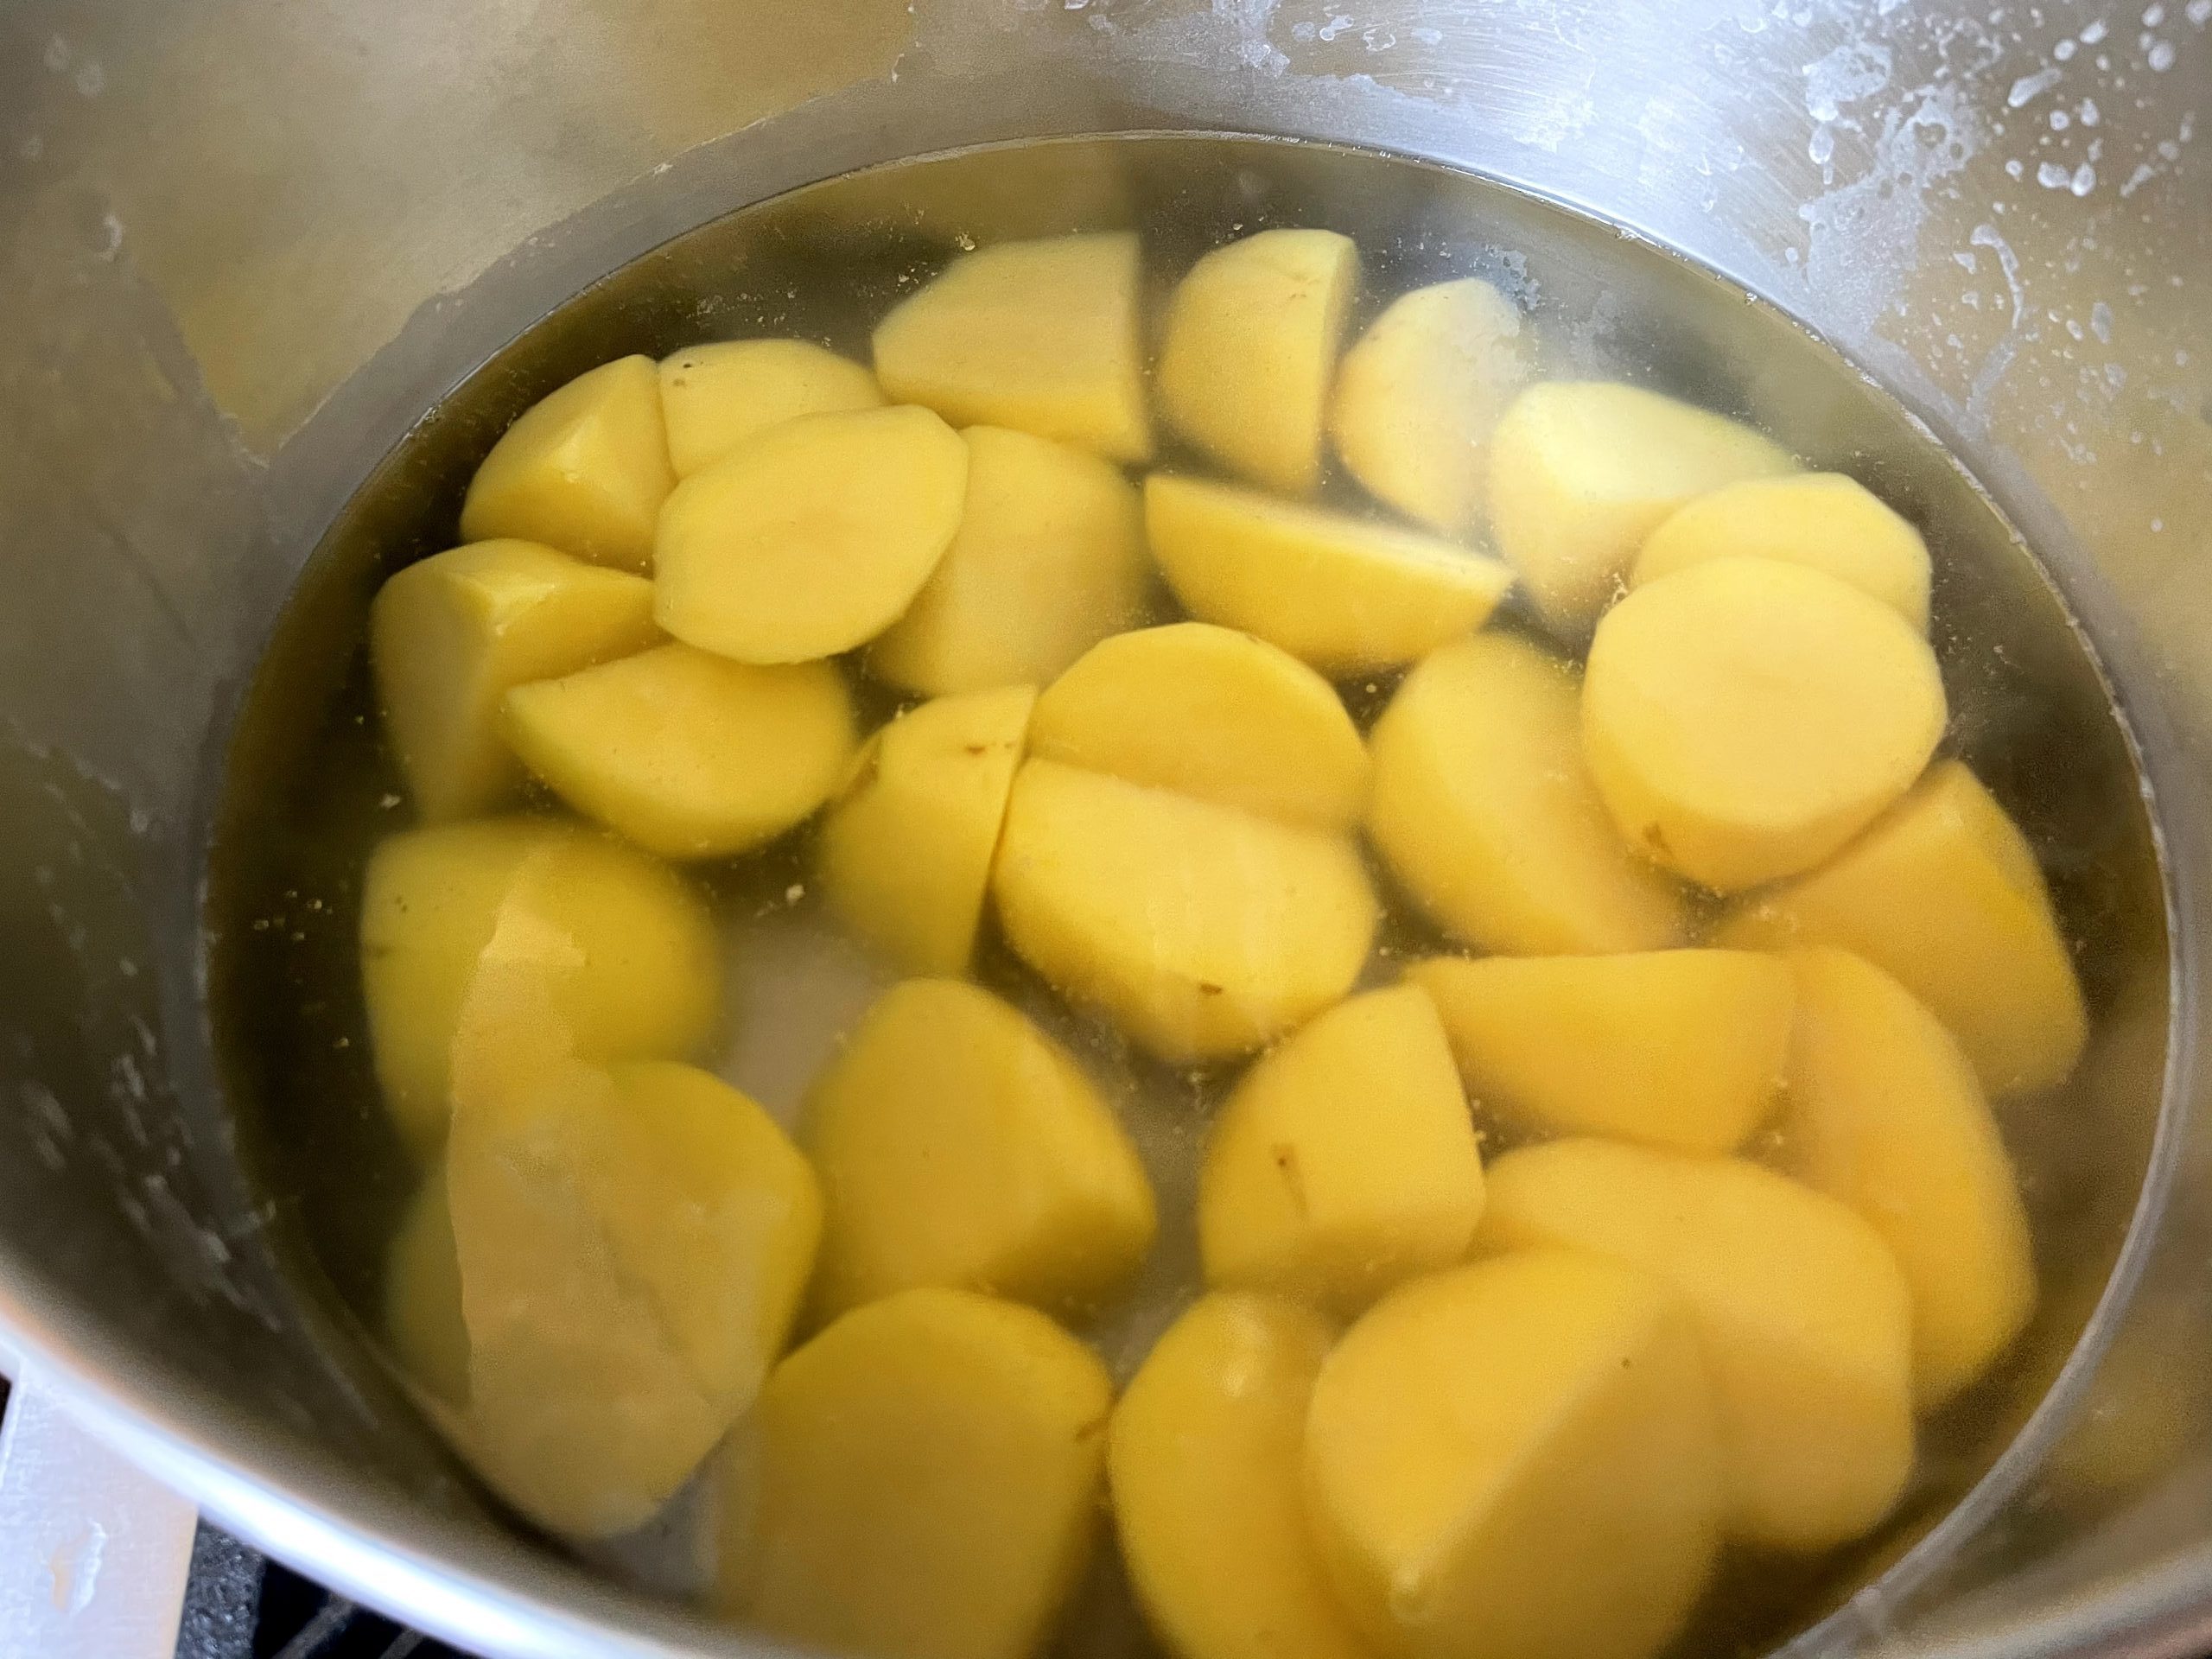 Par boil cut potatoes.